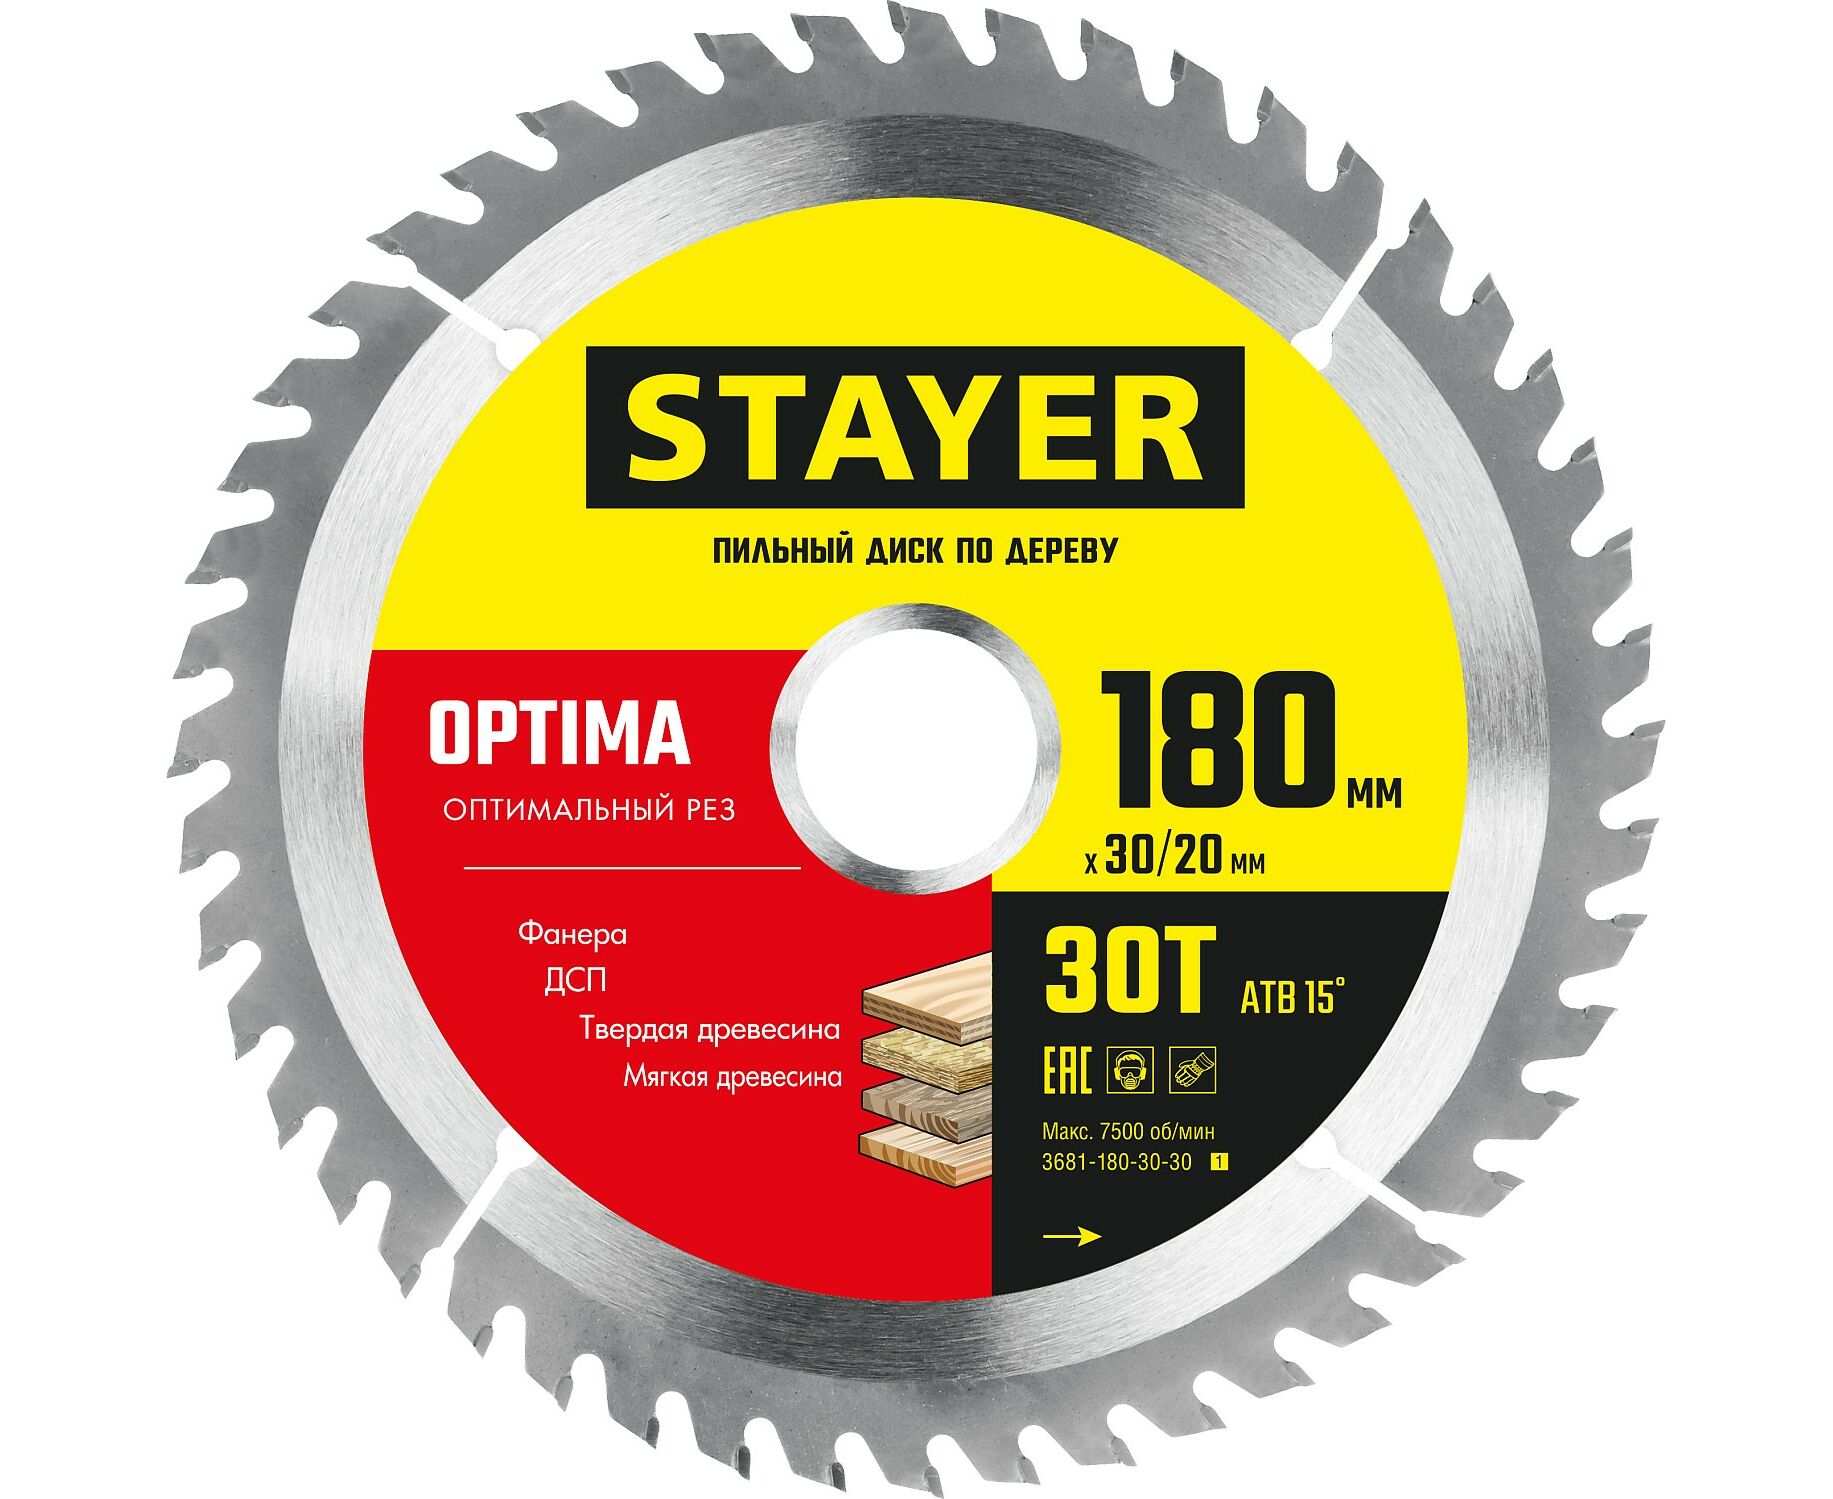 Пильный диск STAYER OPTIMA 180 x 30/20мм 30Т, оптимальный рез по дереву